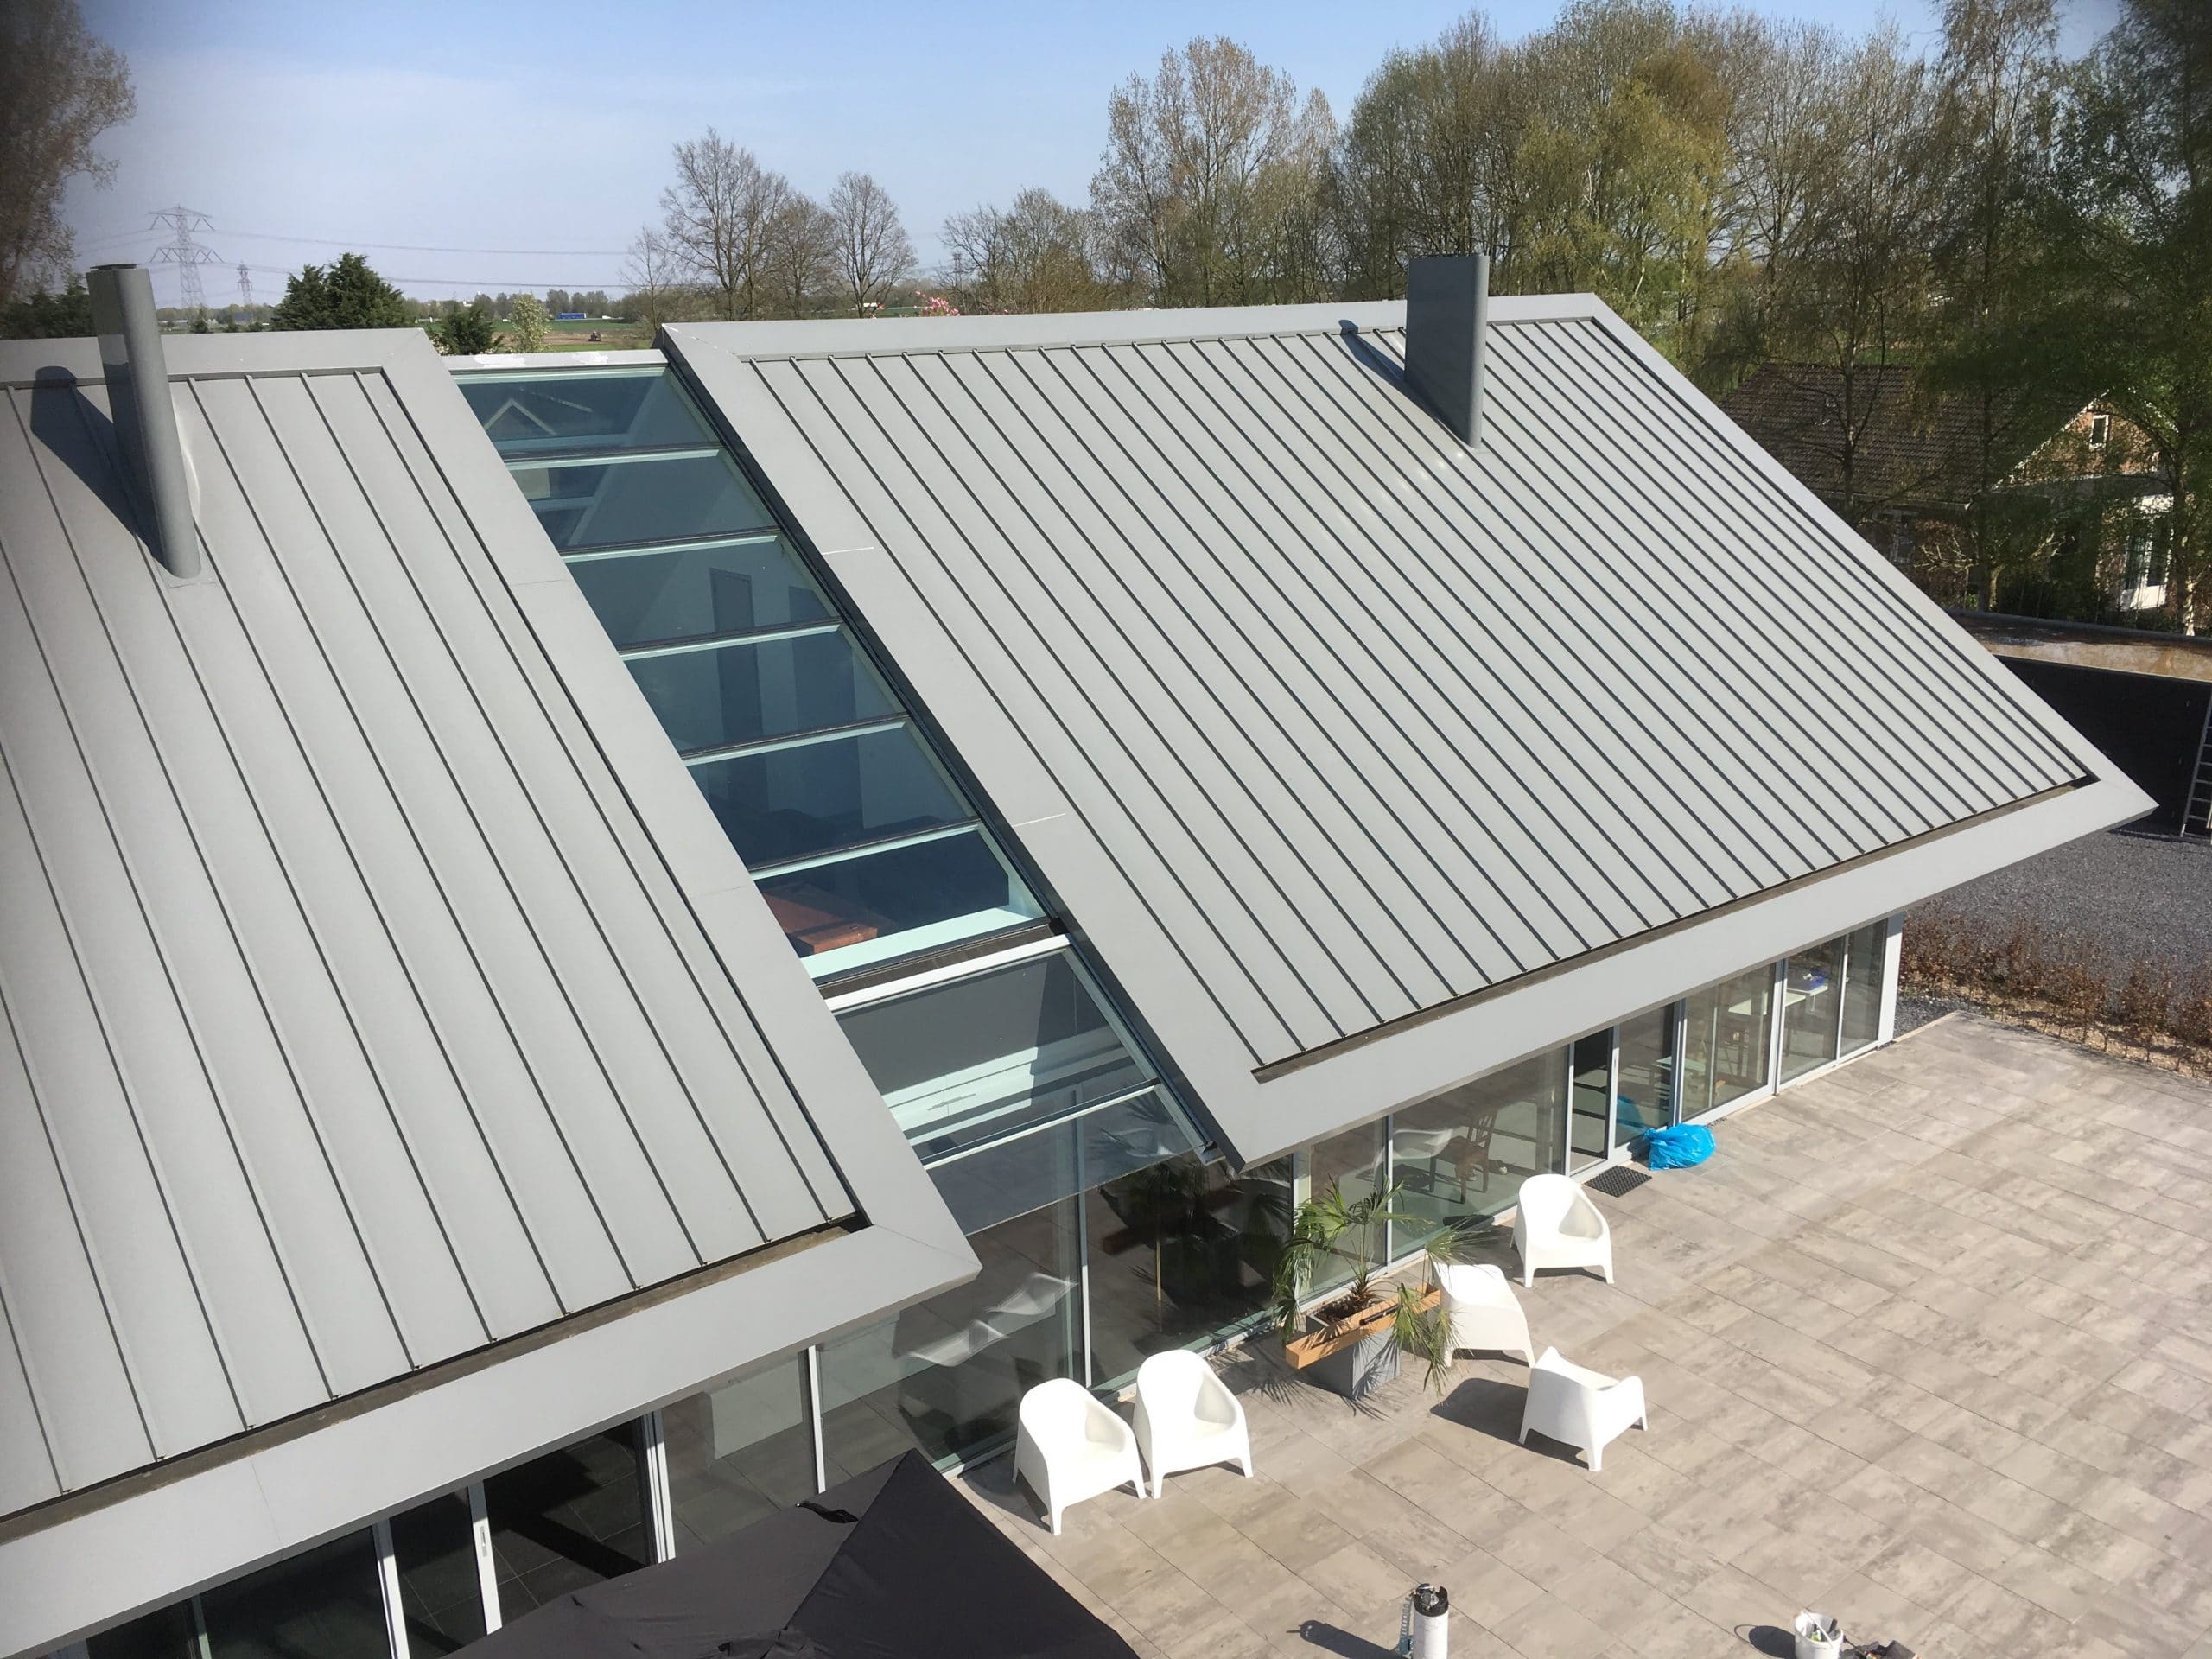 Glazen dak constructie voorzien van Sunblock Stainless Steel 15 teneinde de zonnewarmte buiten de woning te houden